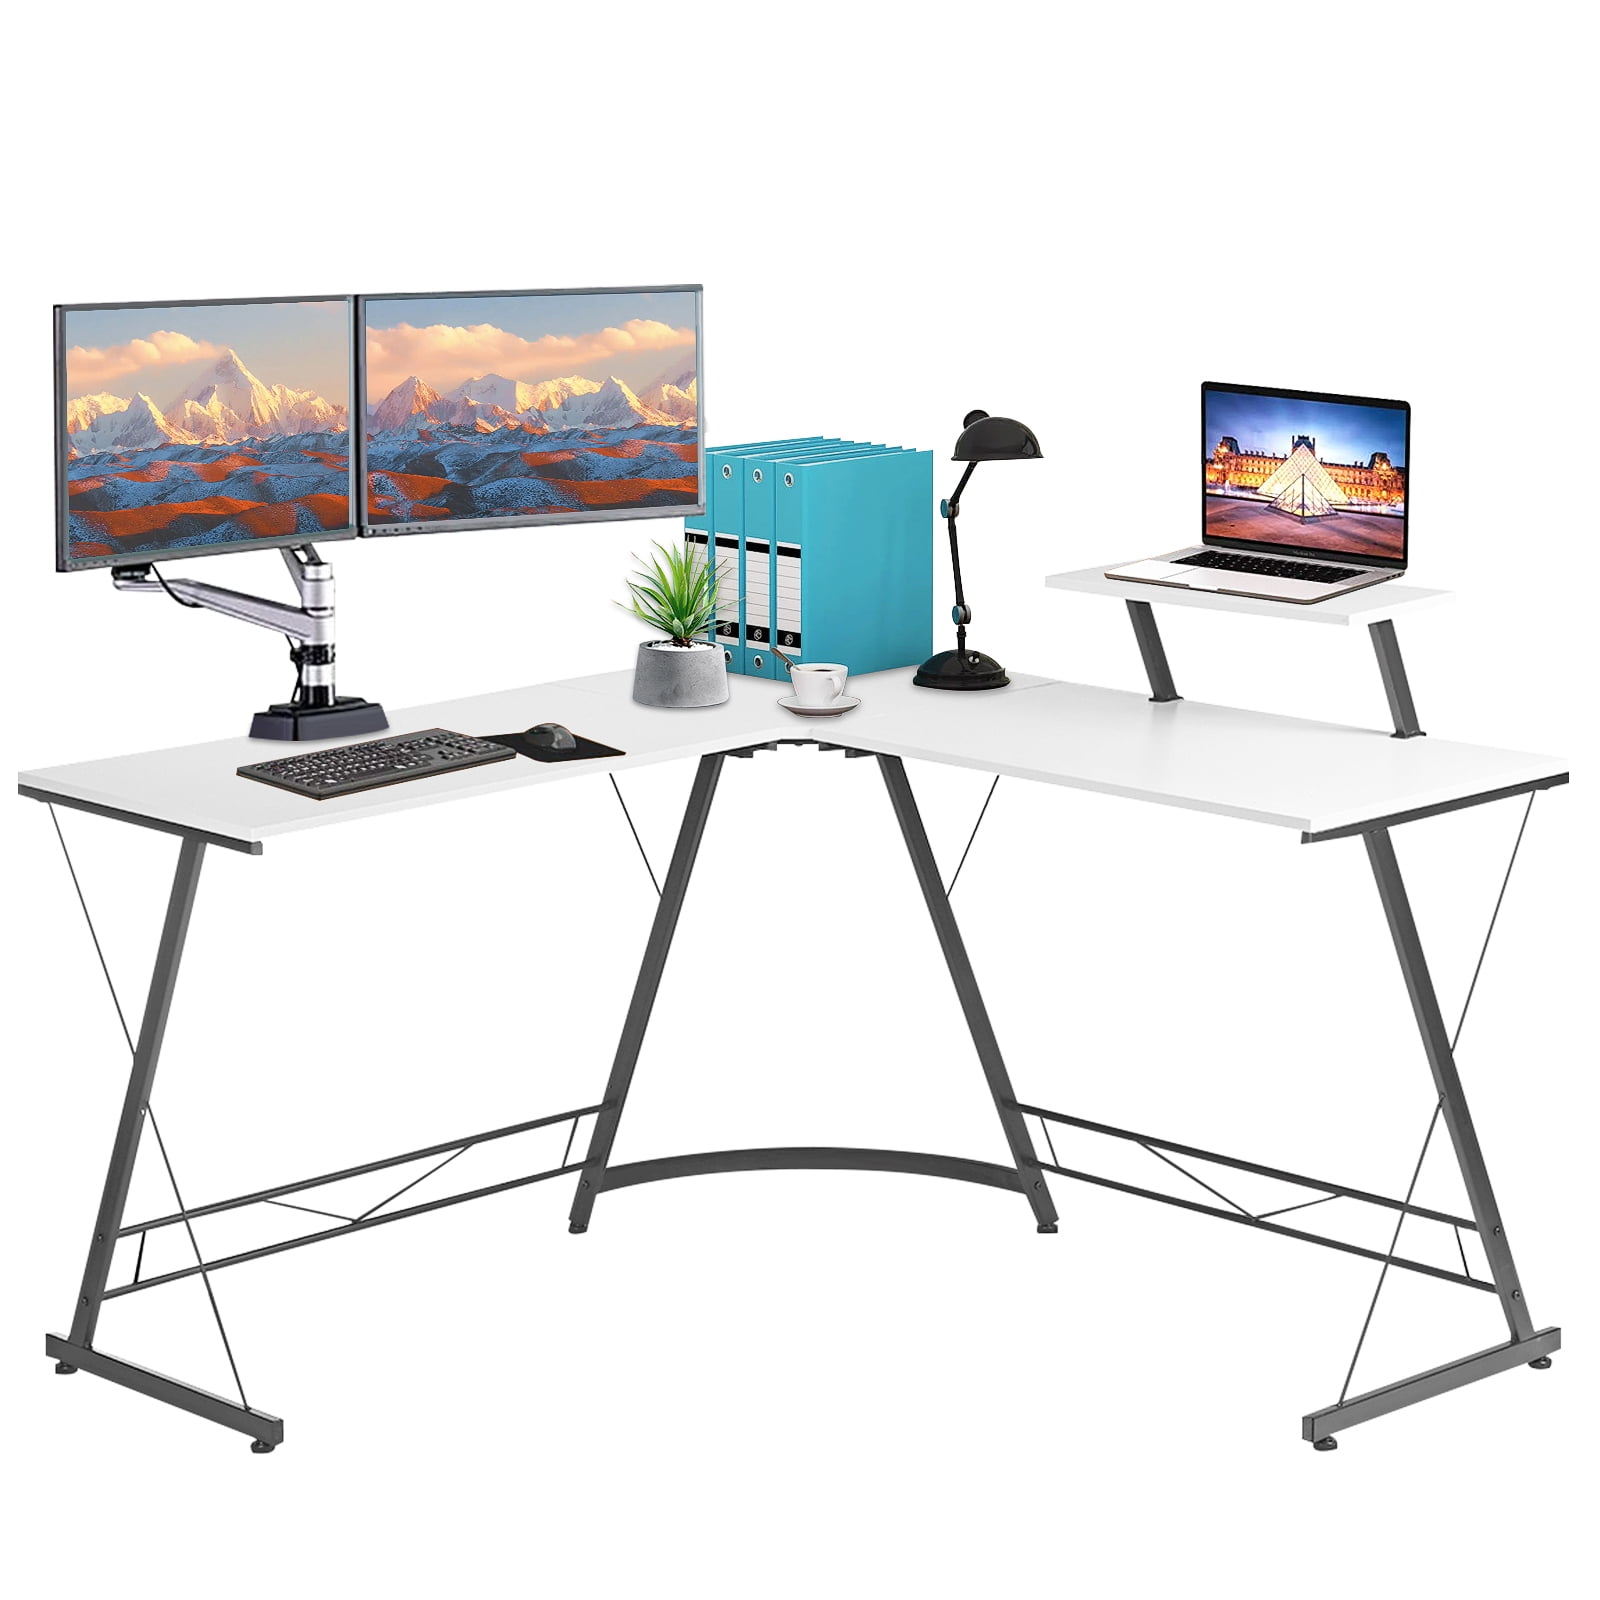 Details about   escritorio mesa gamer desk para computadora con luces RGB gaming game 47" inch 